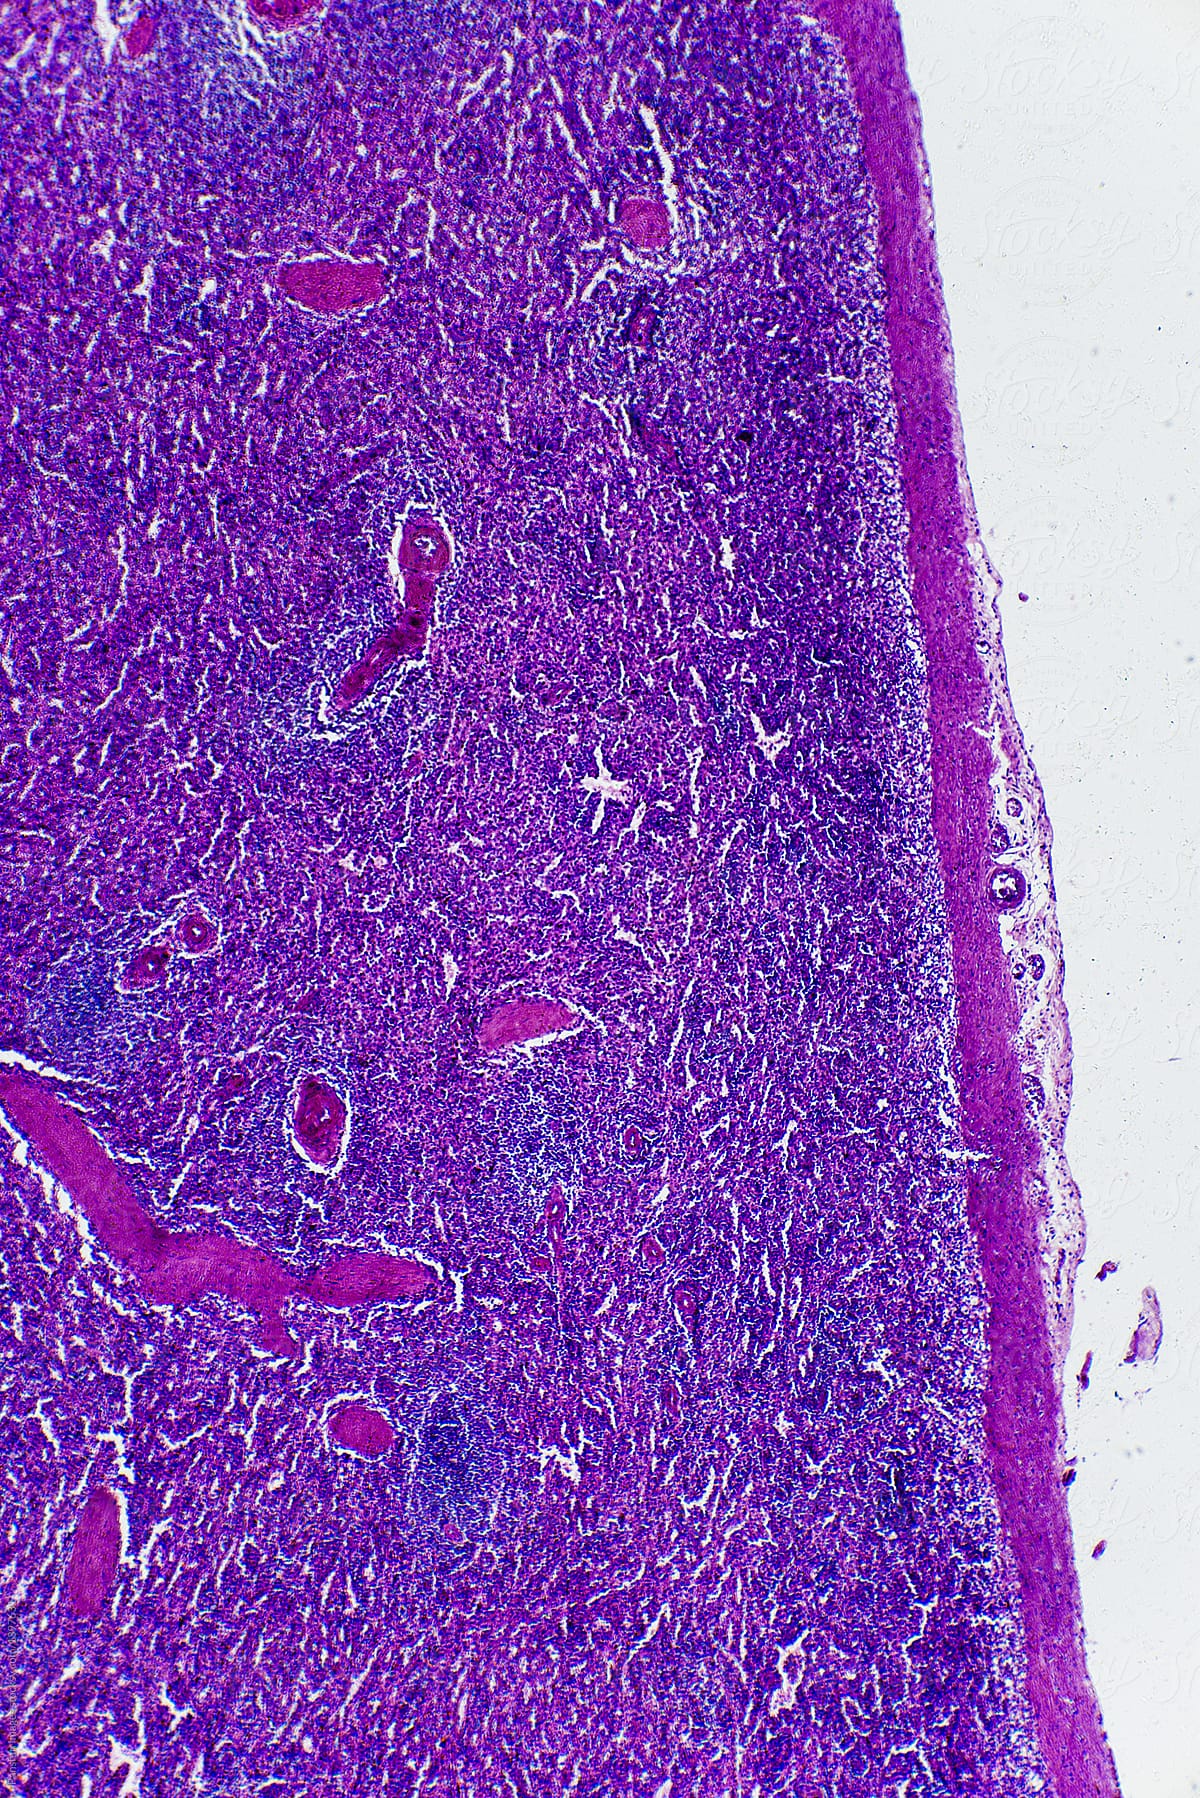 Central antery hyaline degene of human spleen